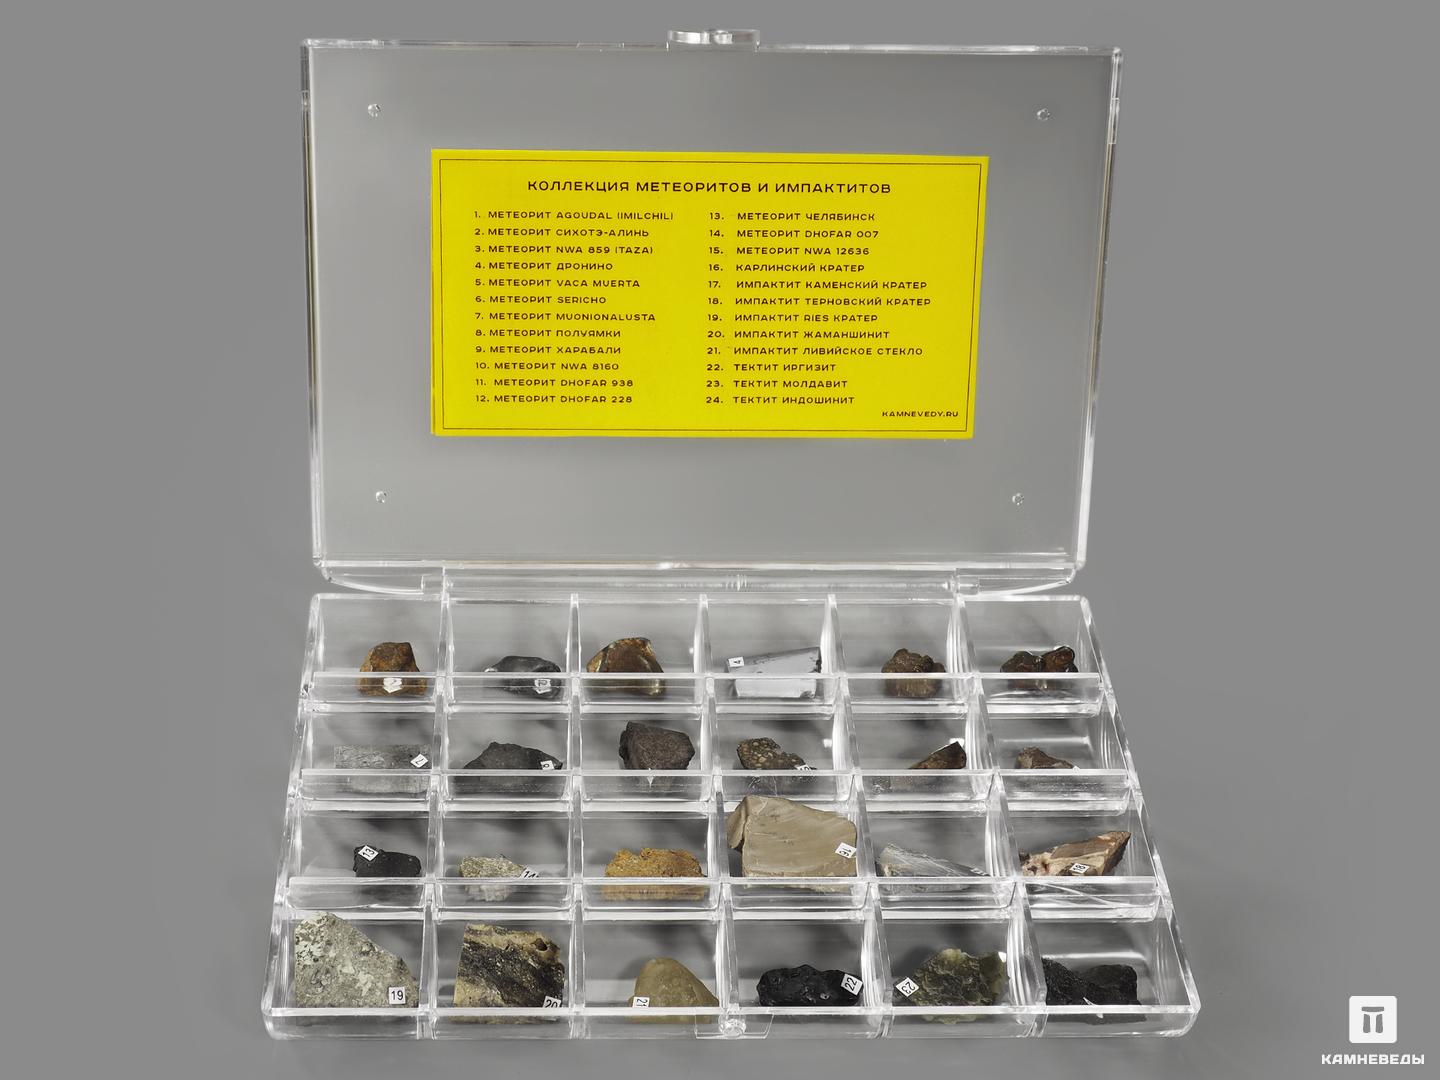 Коллекция метеоритов и импактитов (24 образца, состав №7)